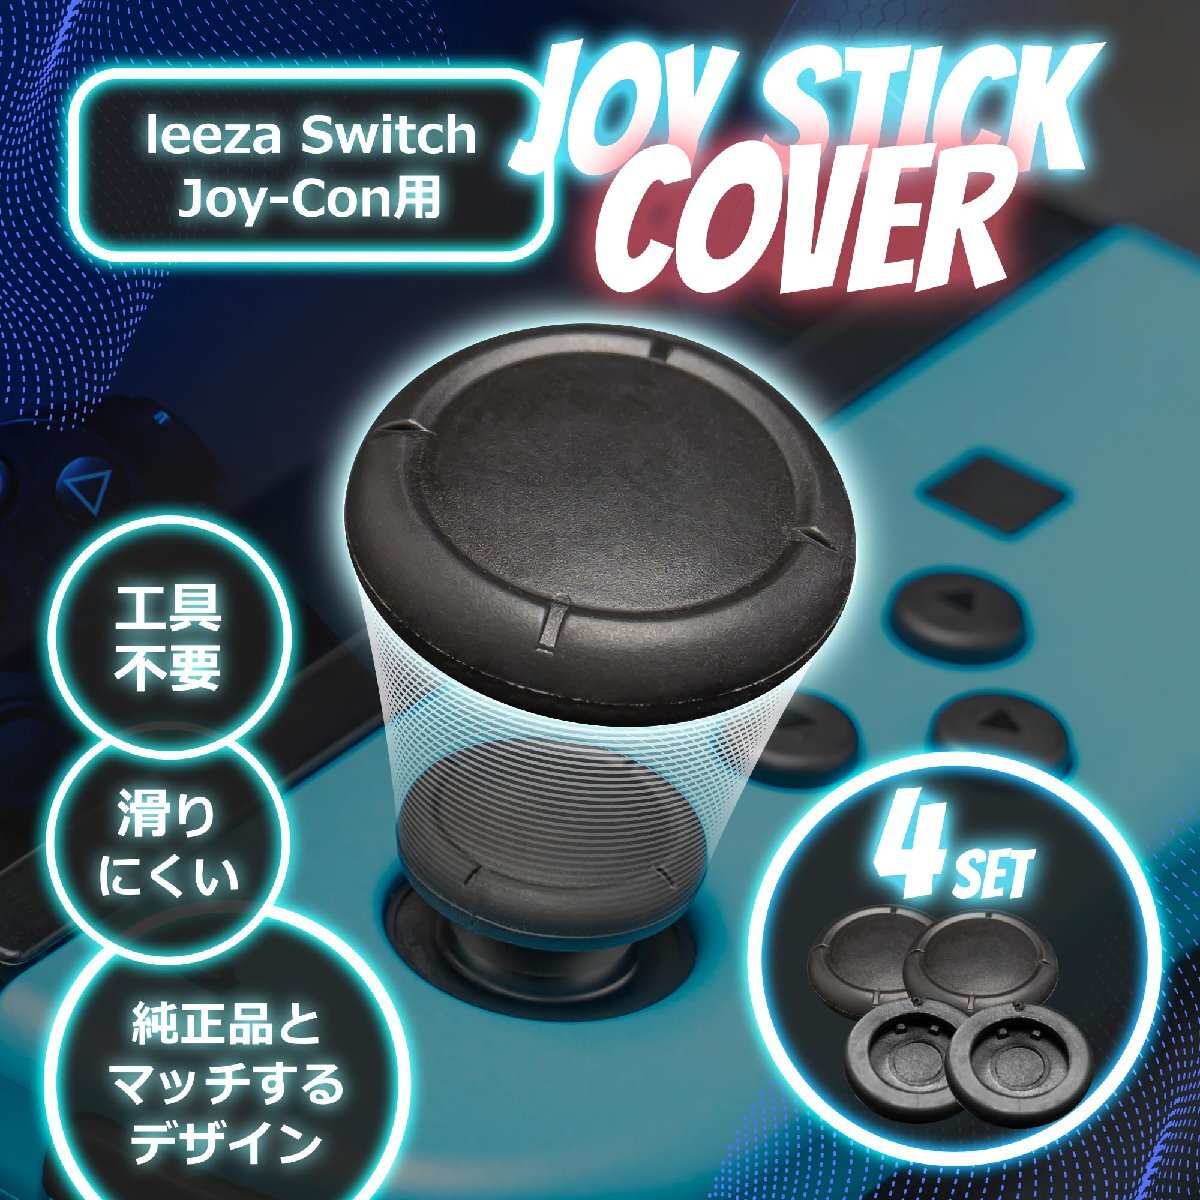 leeza Switch Joy-Con用 アナログジョイスティック キャップ カバー4点セット 黒色_画像2